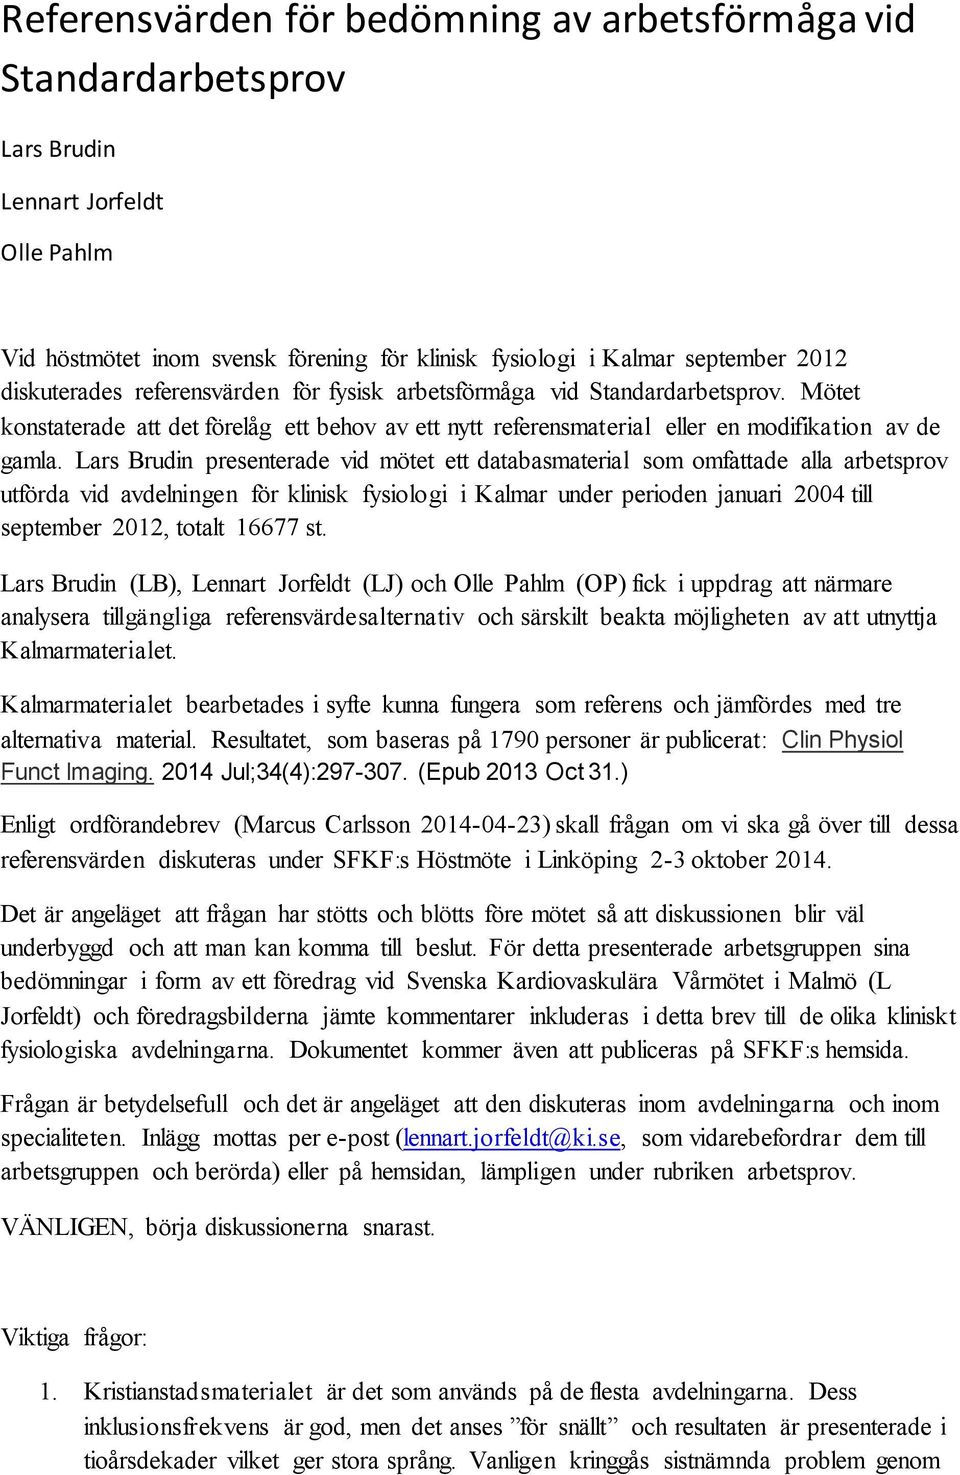 Lars Brudin presenterade vid mötet ett databasmaterial som omfattade alla arbetsprov utförda vid avdelningen för klinisk fysiologi i Kalmar under perioden januari 2004 till september 2012, totalt